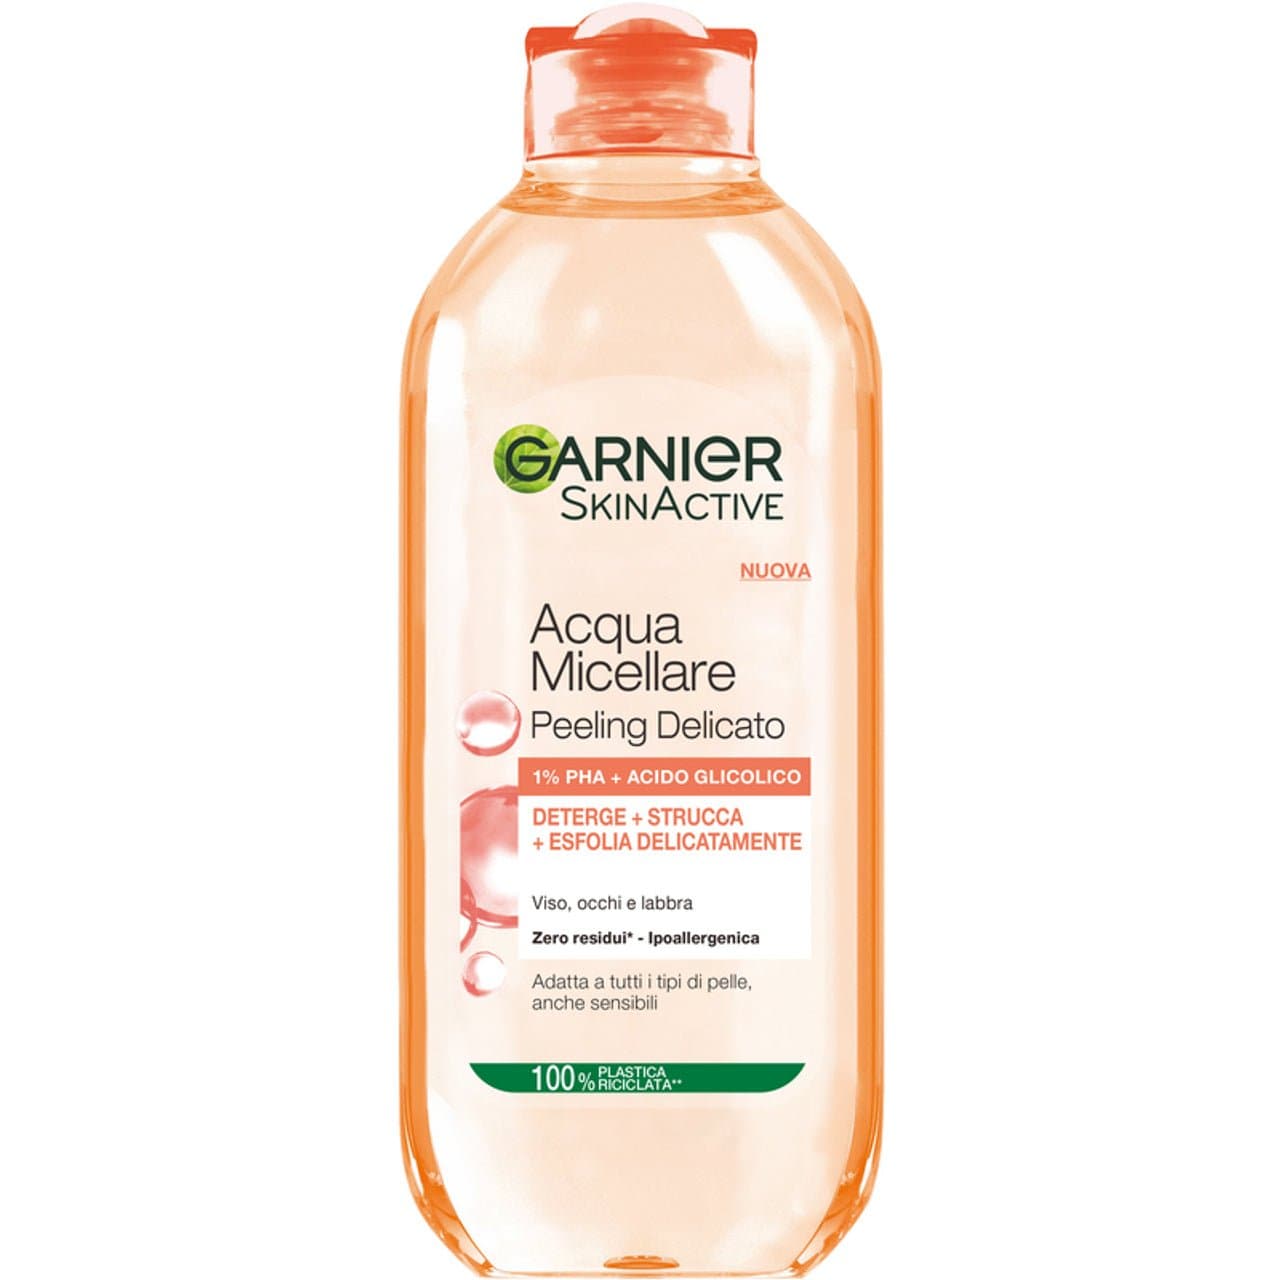 Garnier Skinactive Acqua Micellare Peeling Delicato 1% PHA + Acido Glicolico - Jasmine Parfums- [ean]